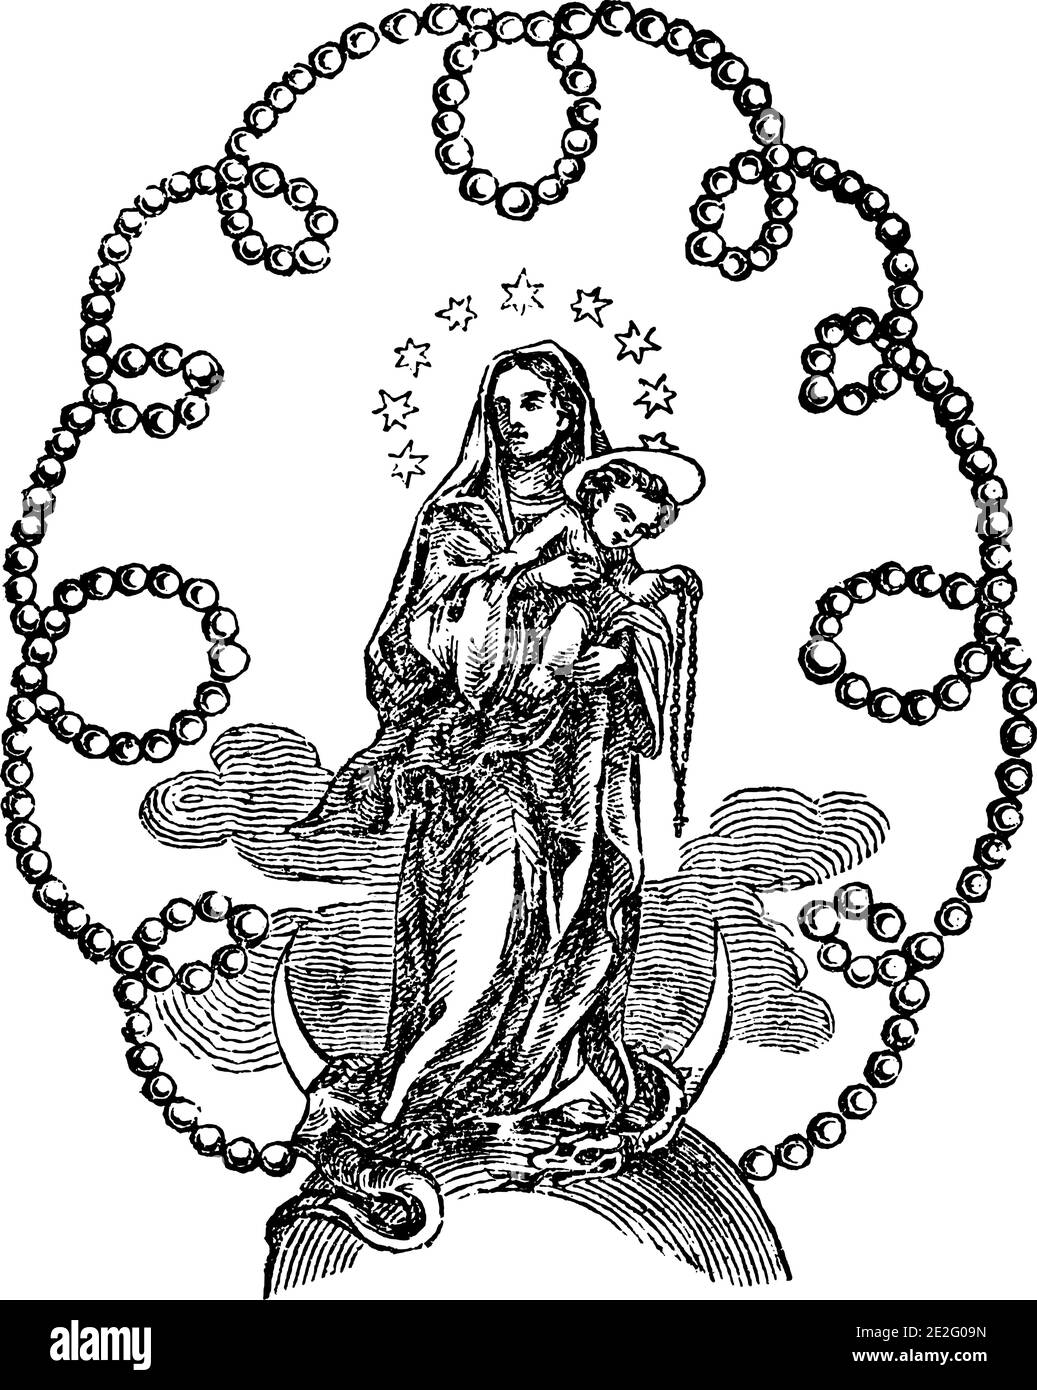 Immagine ornamentale di Madonna o Vergine Maria che tiene bambino Gesù Cristo circondato da ornamento perla.Antique annata biblica cristiana religiosa incisione o disegno. Illustrazione Vettoriale